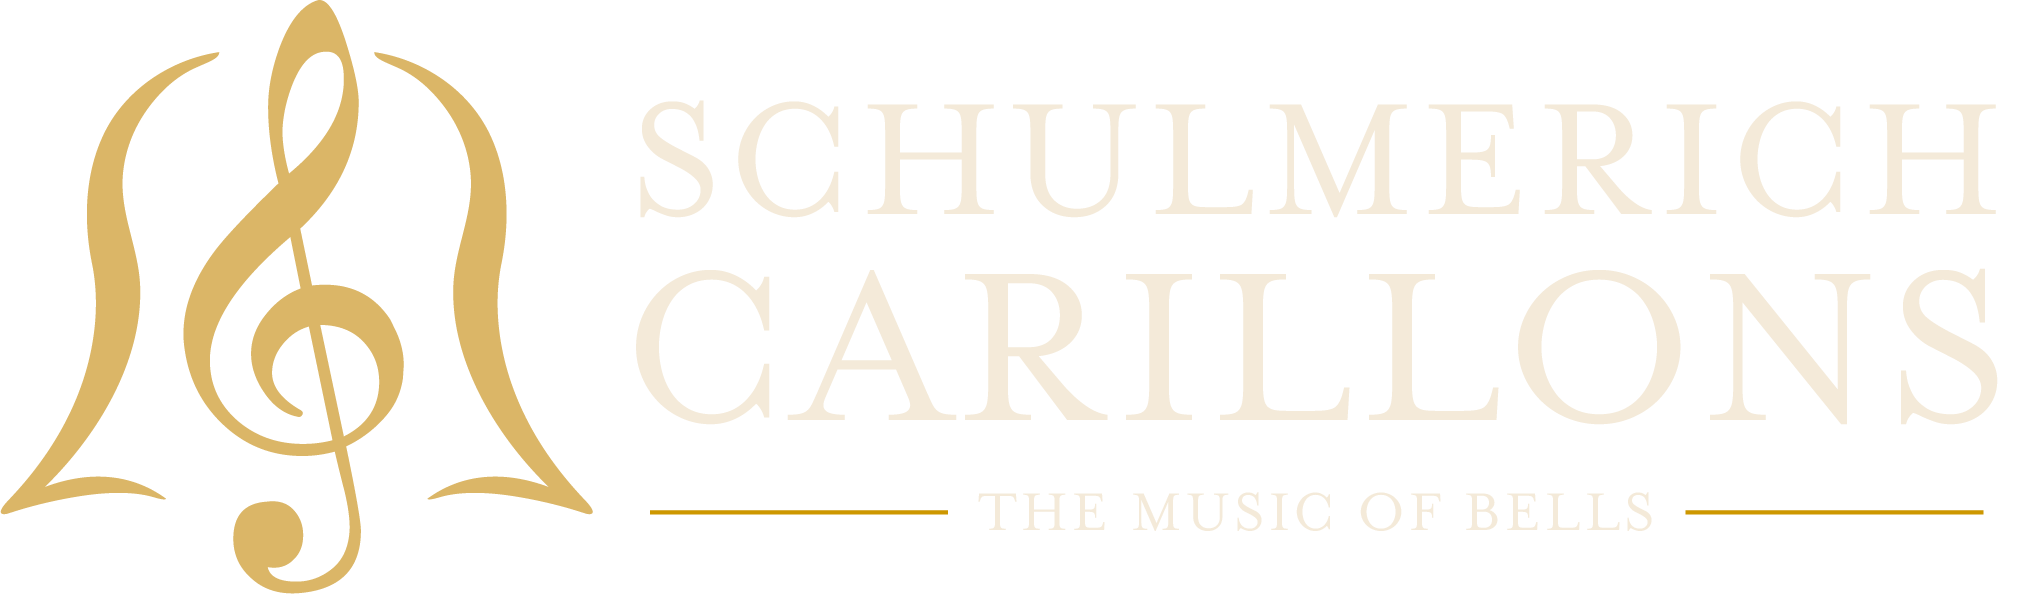 Schulmerich Carillons